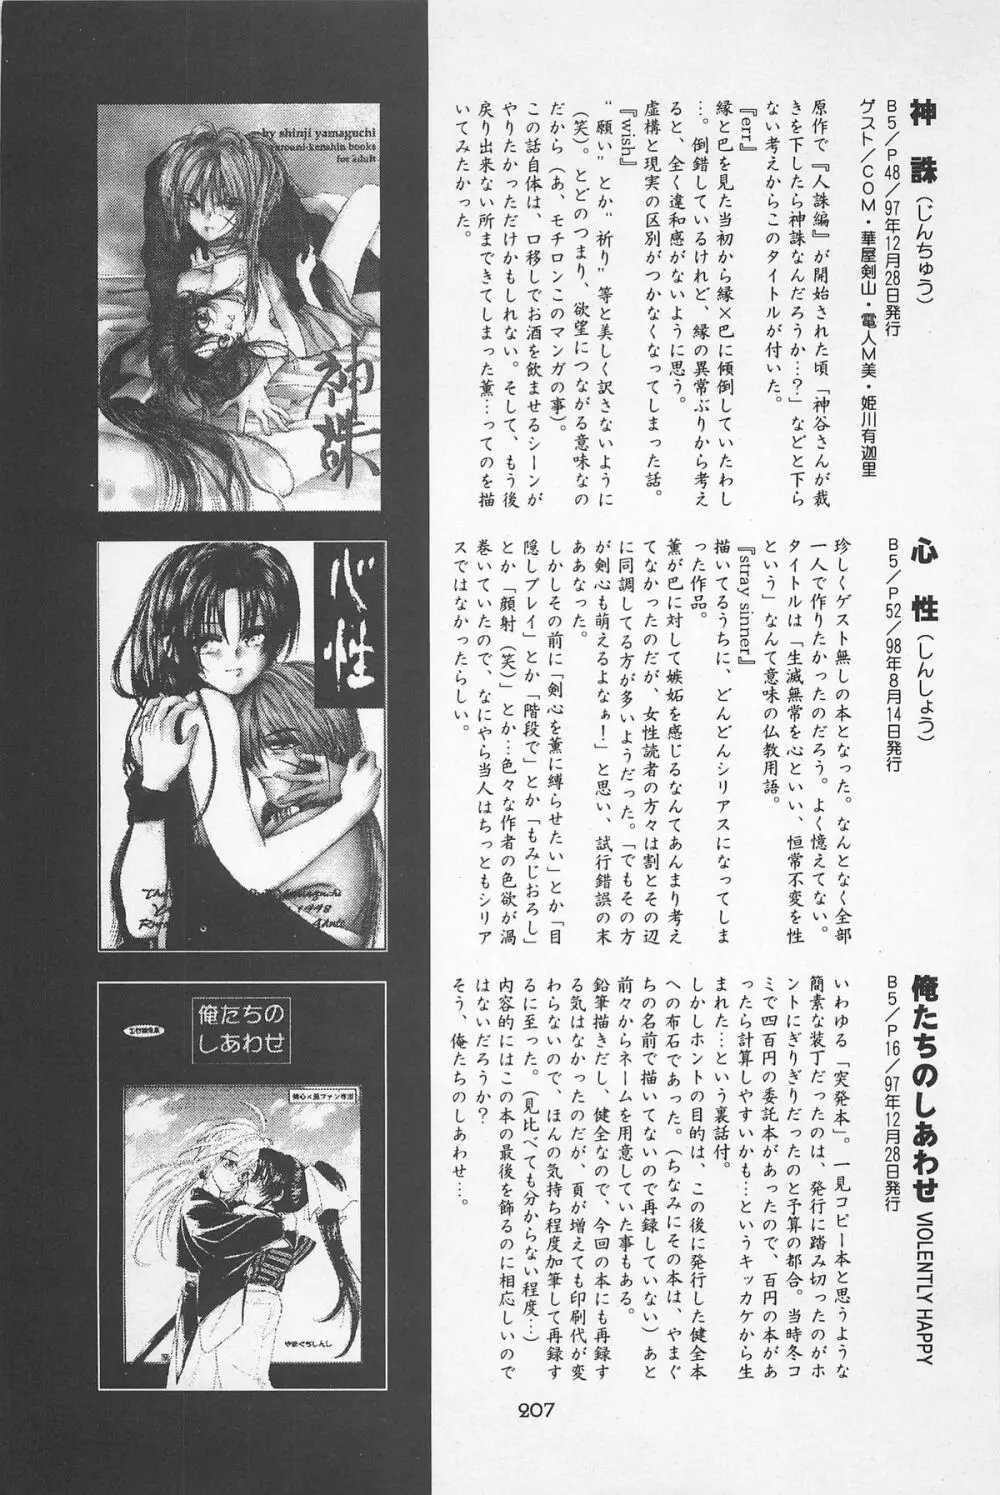 禁忌Ⅱ THE WORKS OF SHINJI YAMAGUCHI - page207